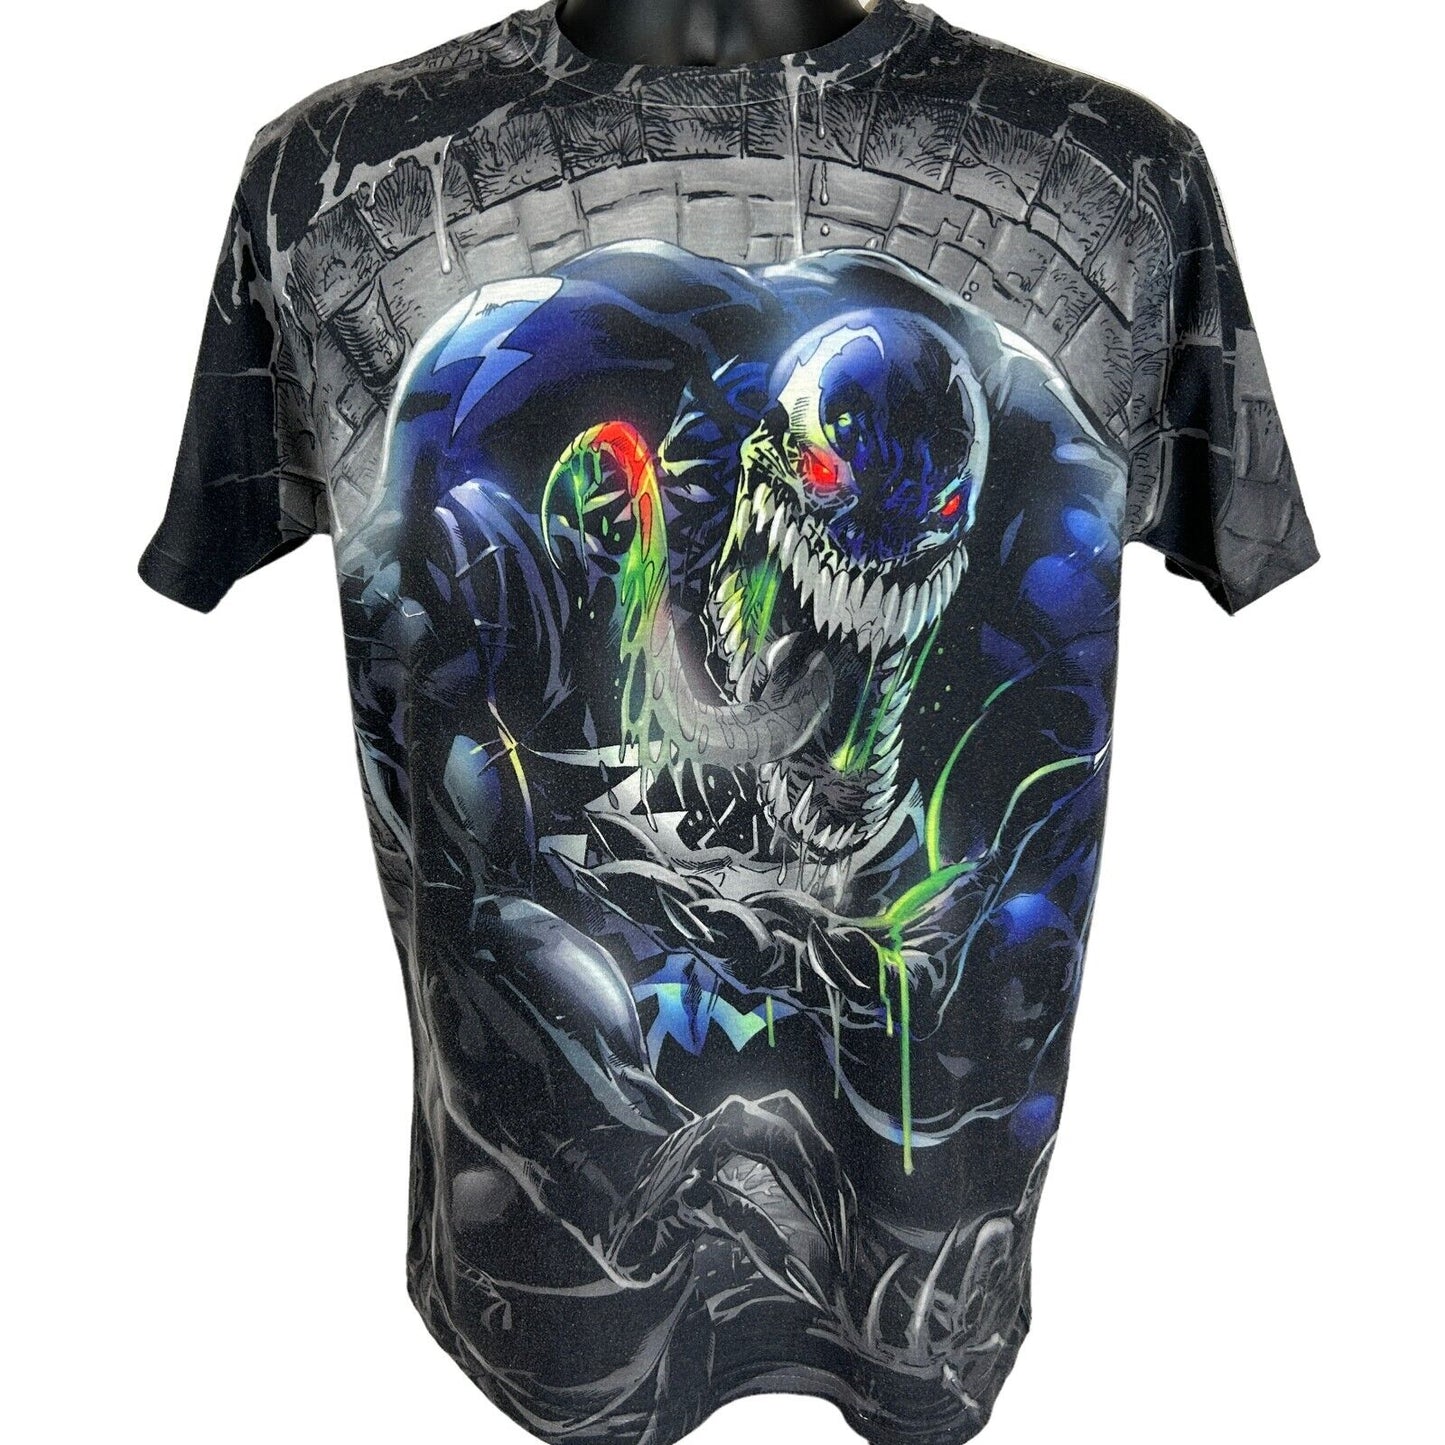 Spider-Man Venom All Over Print T Shirt Medium Marvel Comics AOP MCU Mens Black